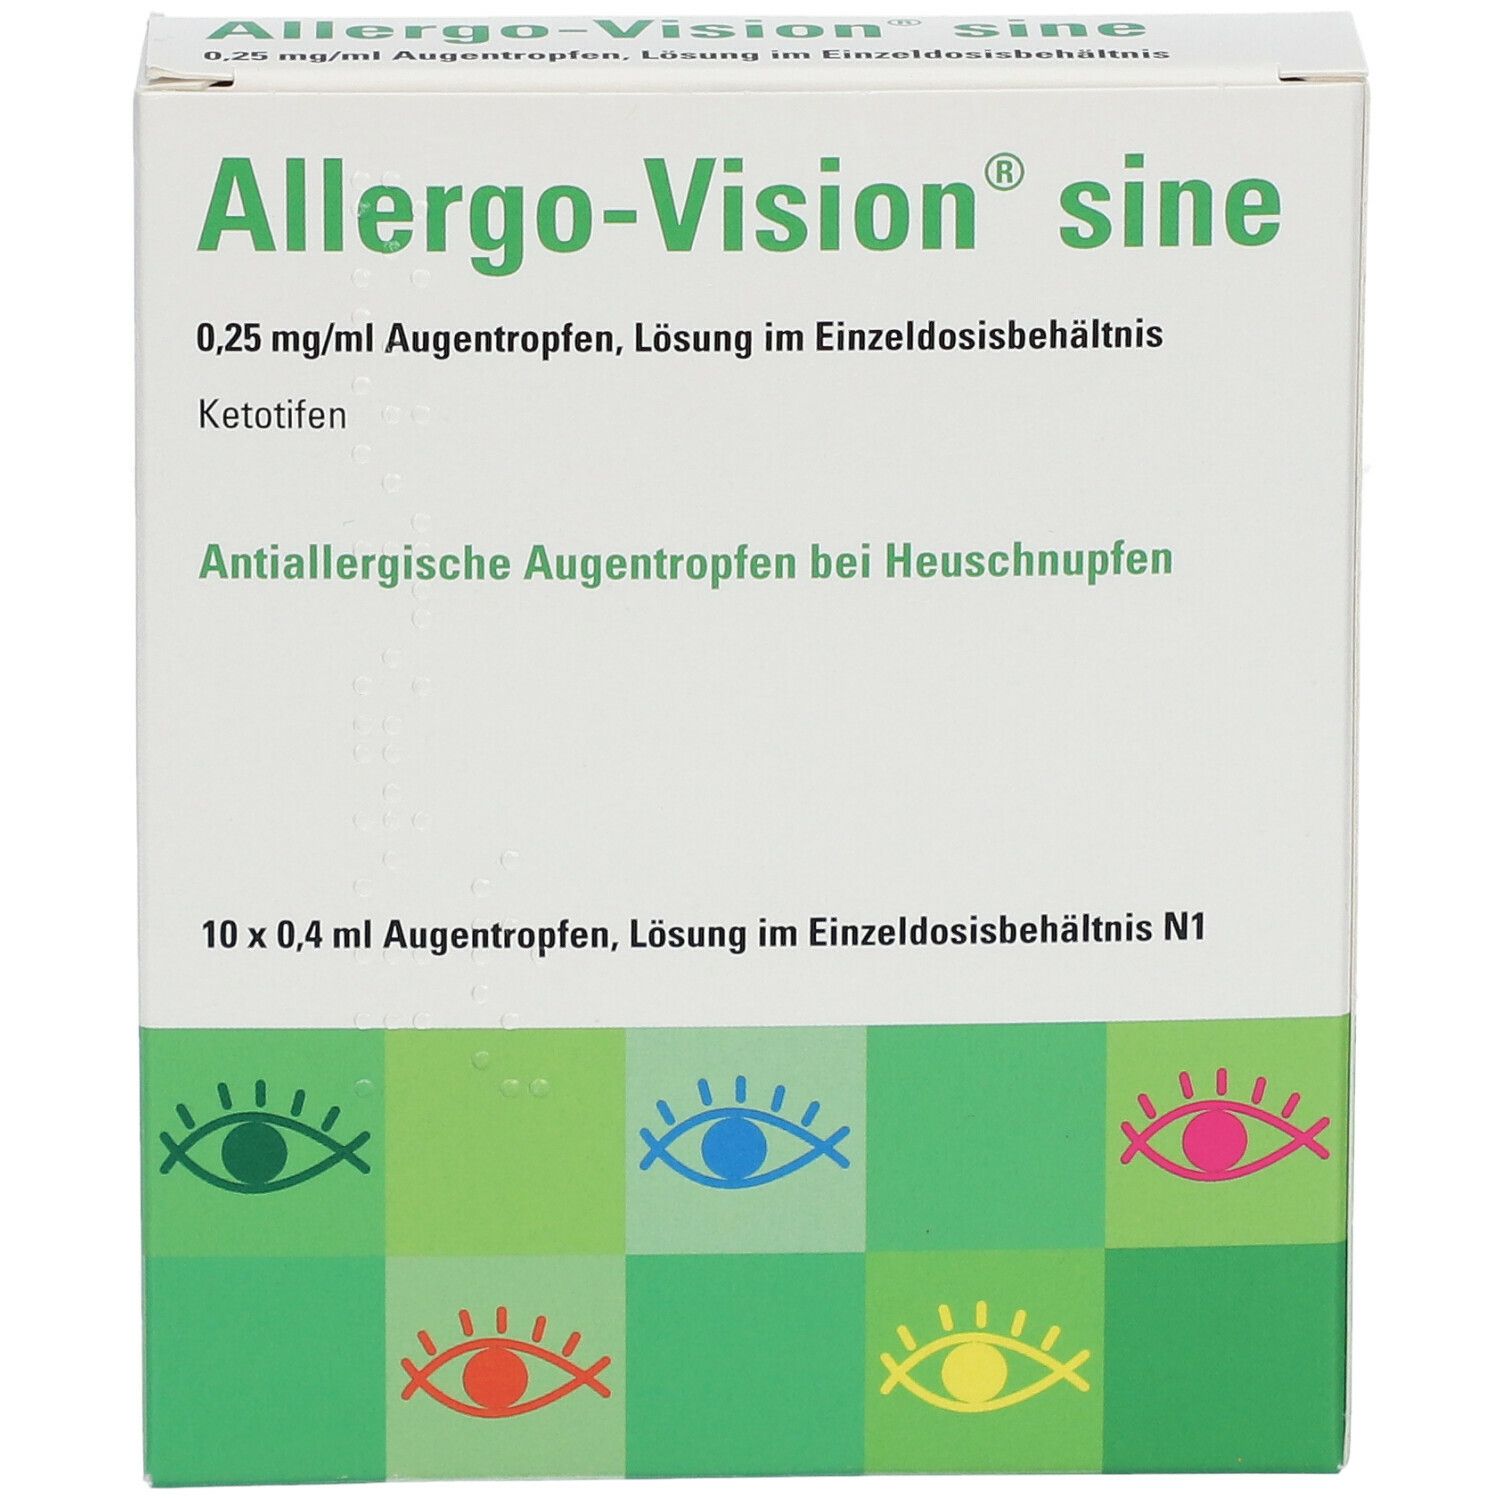 Allergo-Vision® sine 0,25 mg/ml Augentropfen